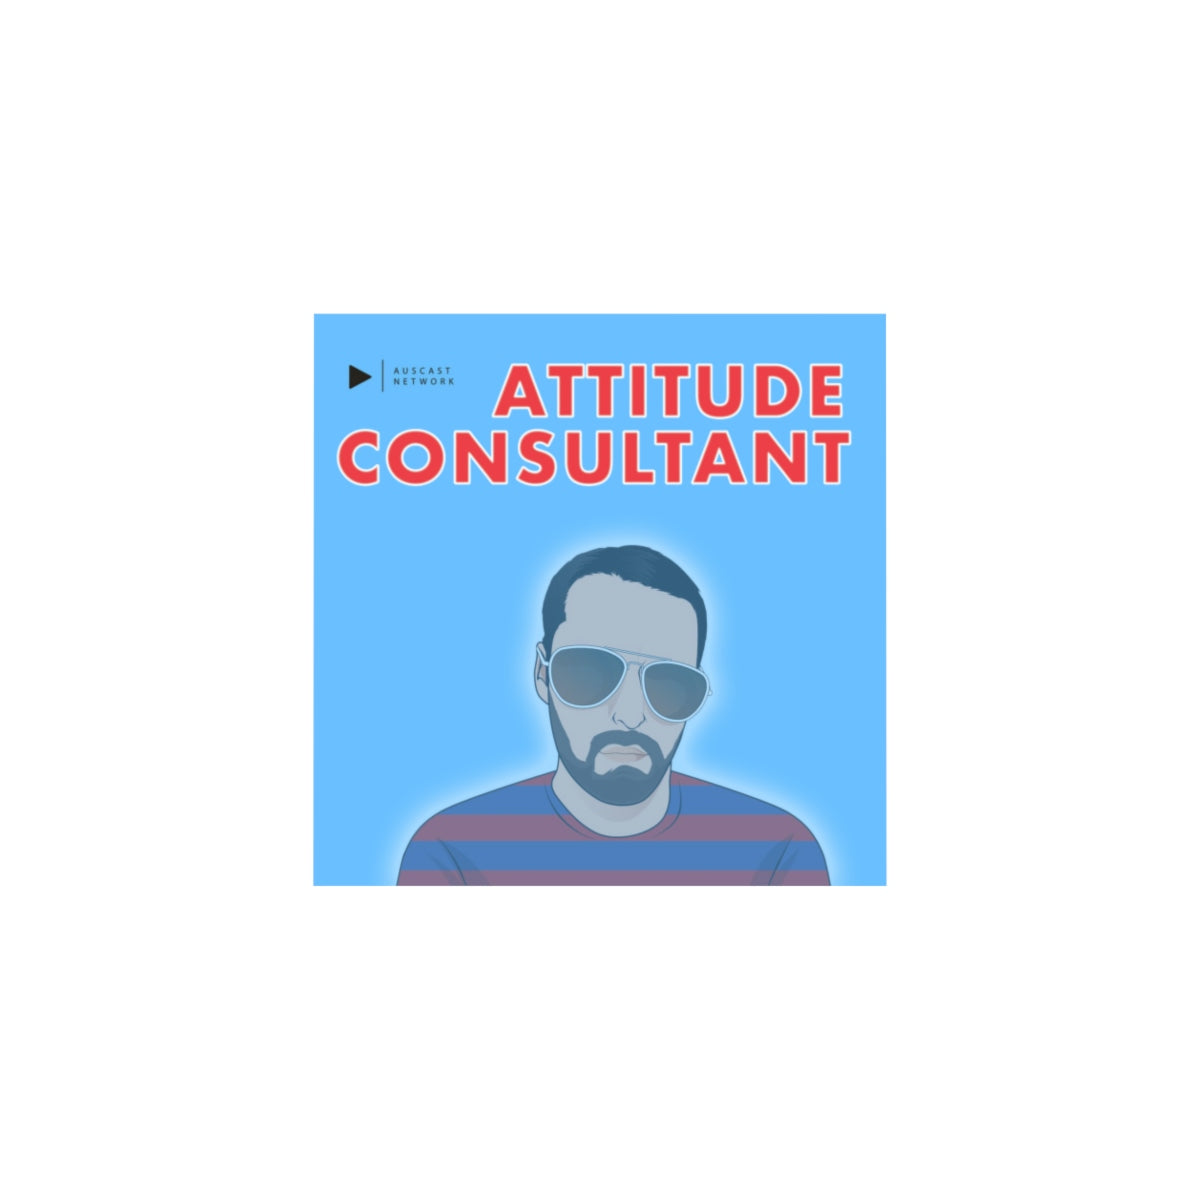 Attitude Consultant Microfiber Duvet Cover